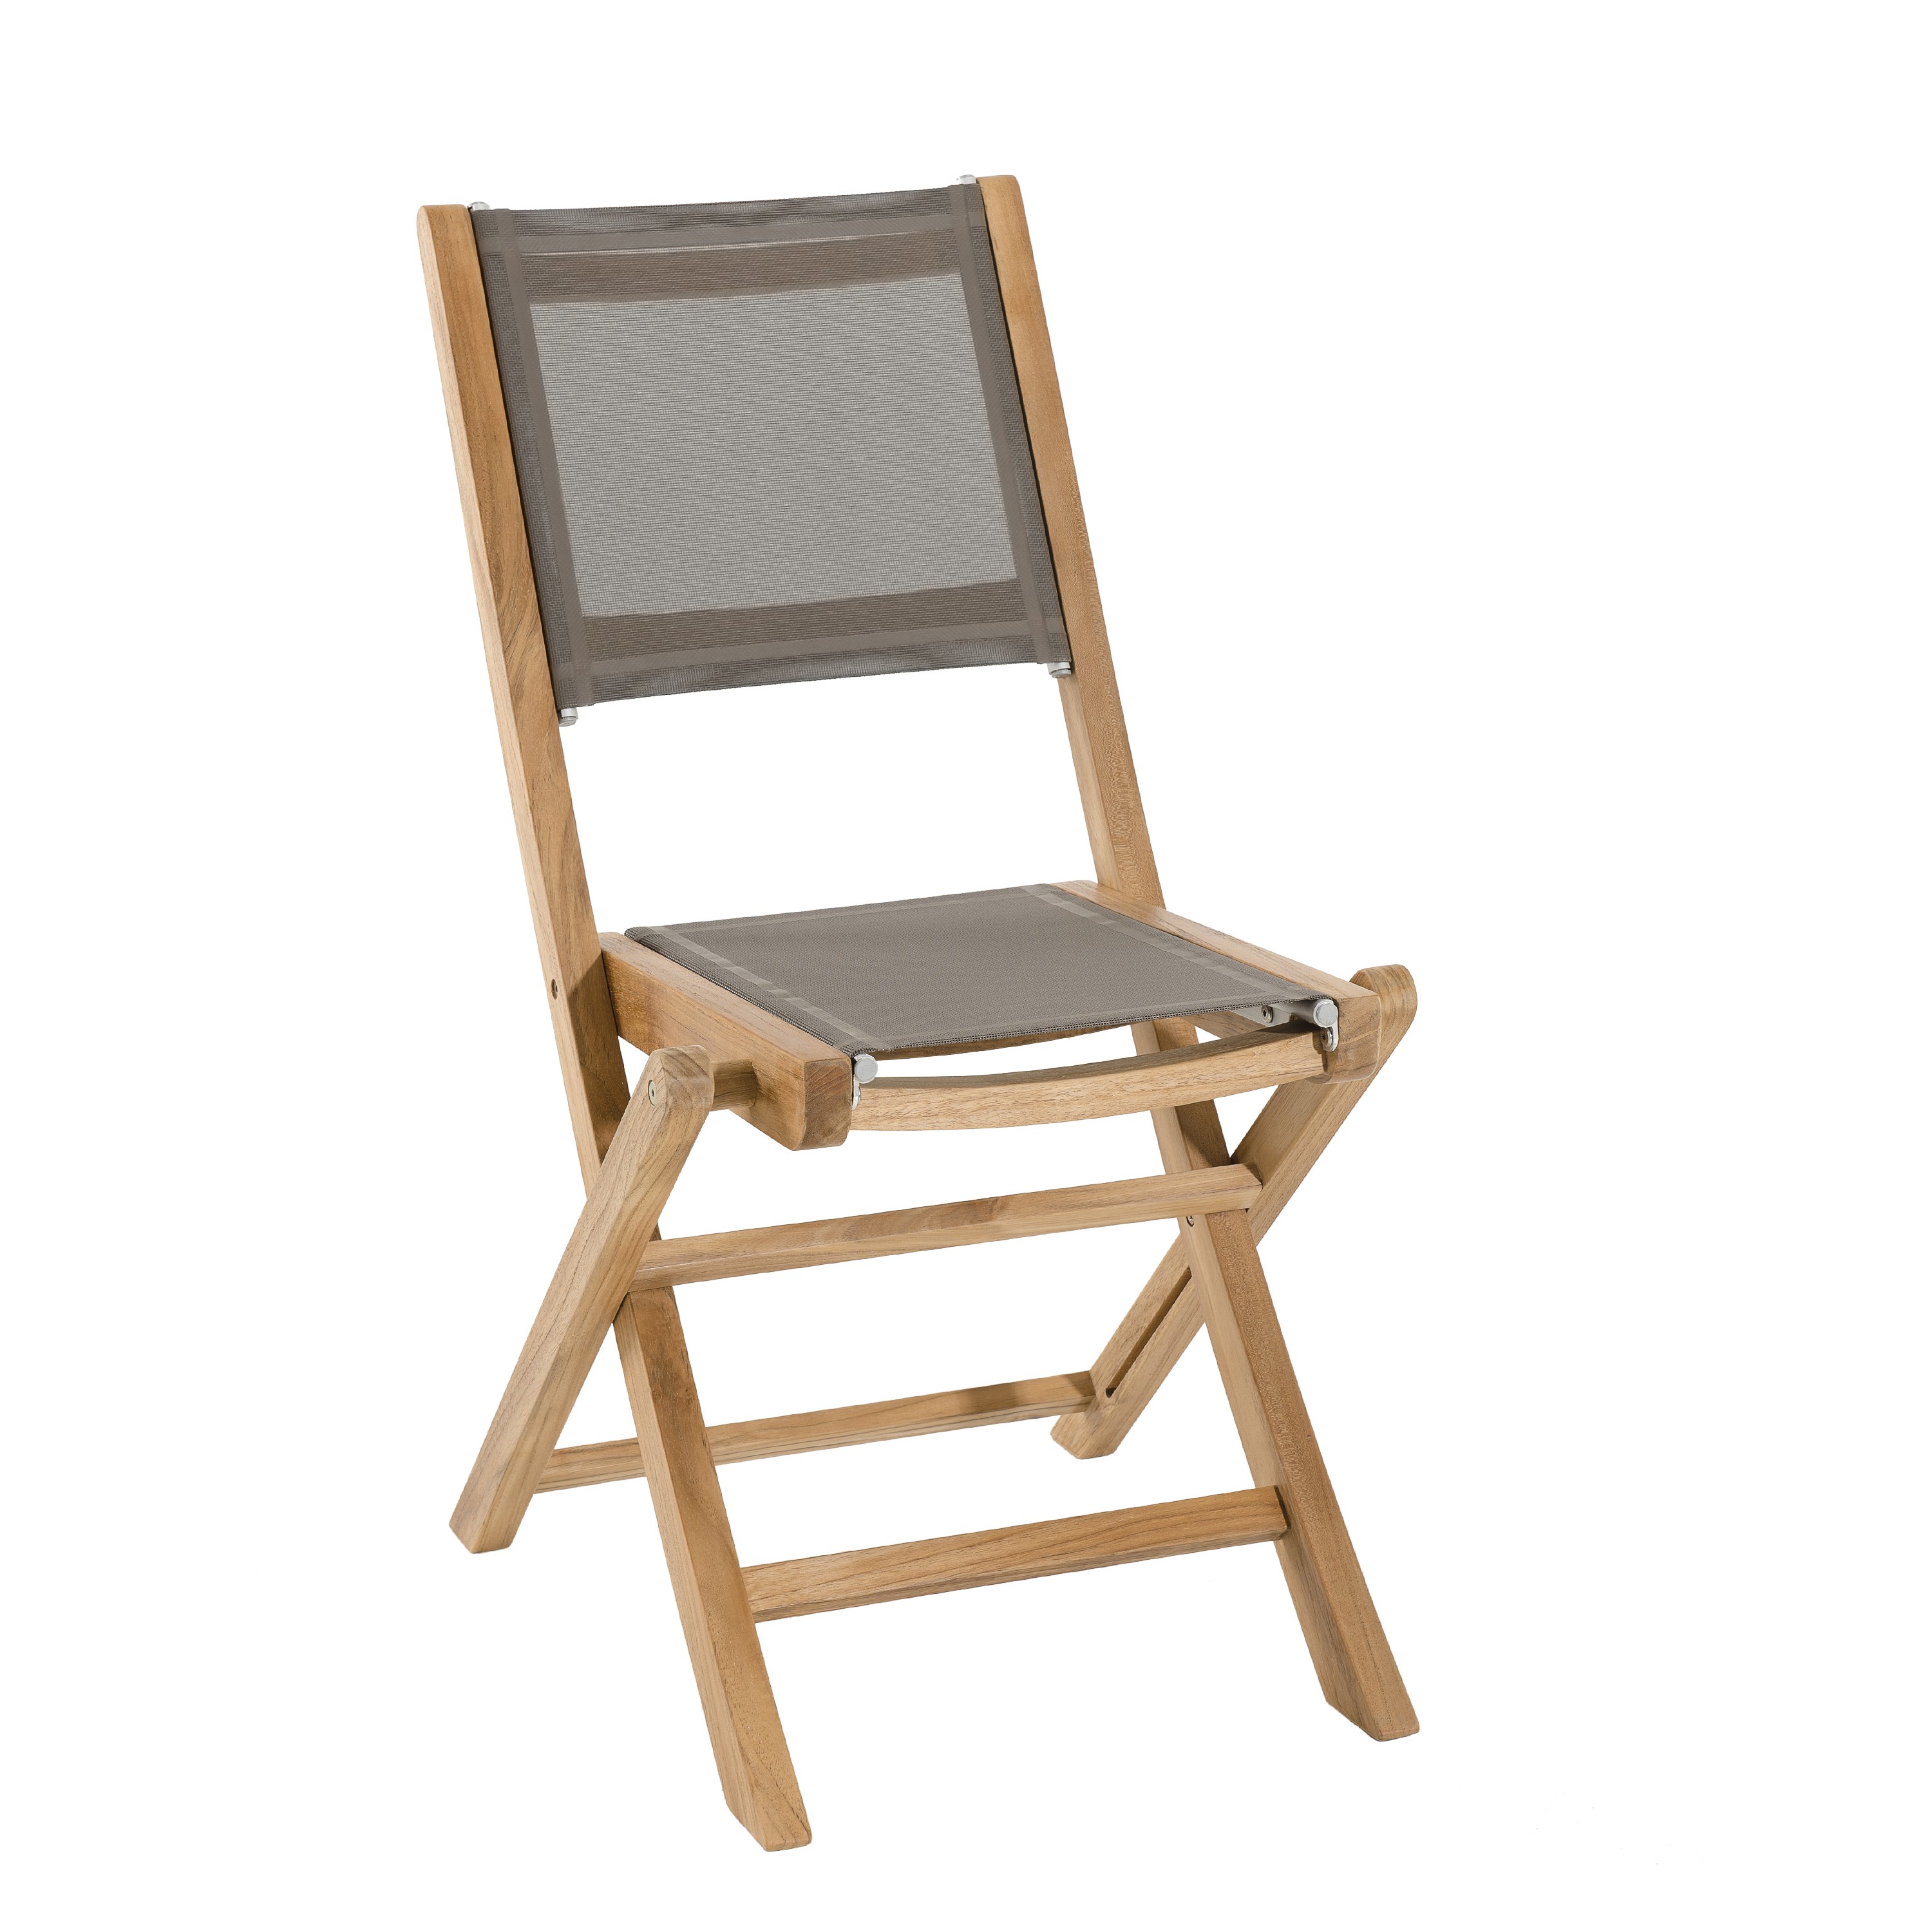 Delgado Playa social Lote de 2 sillas plegables en madera de teca y textileno color gris topo